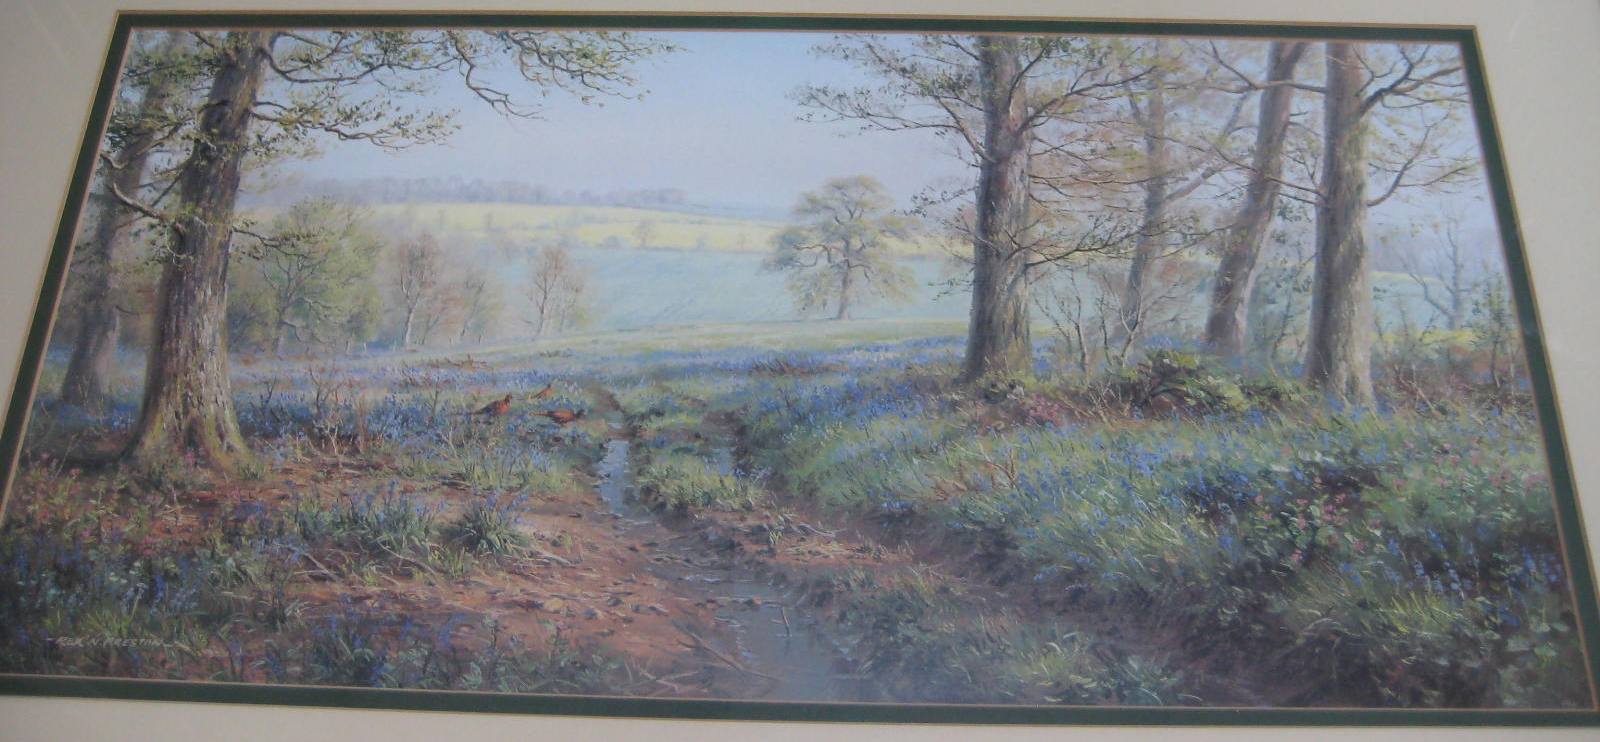 A large framed landscape print